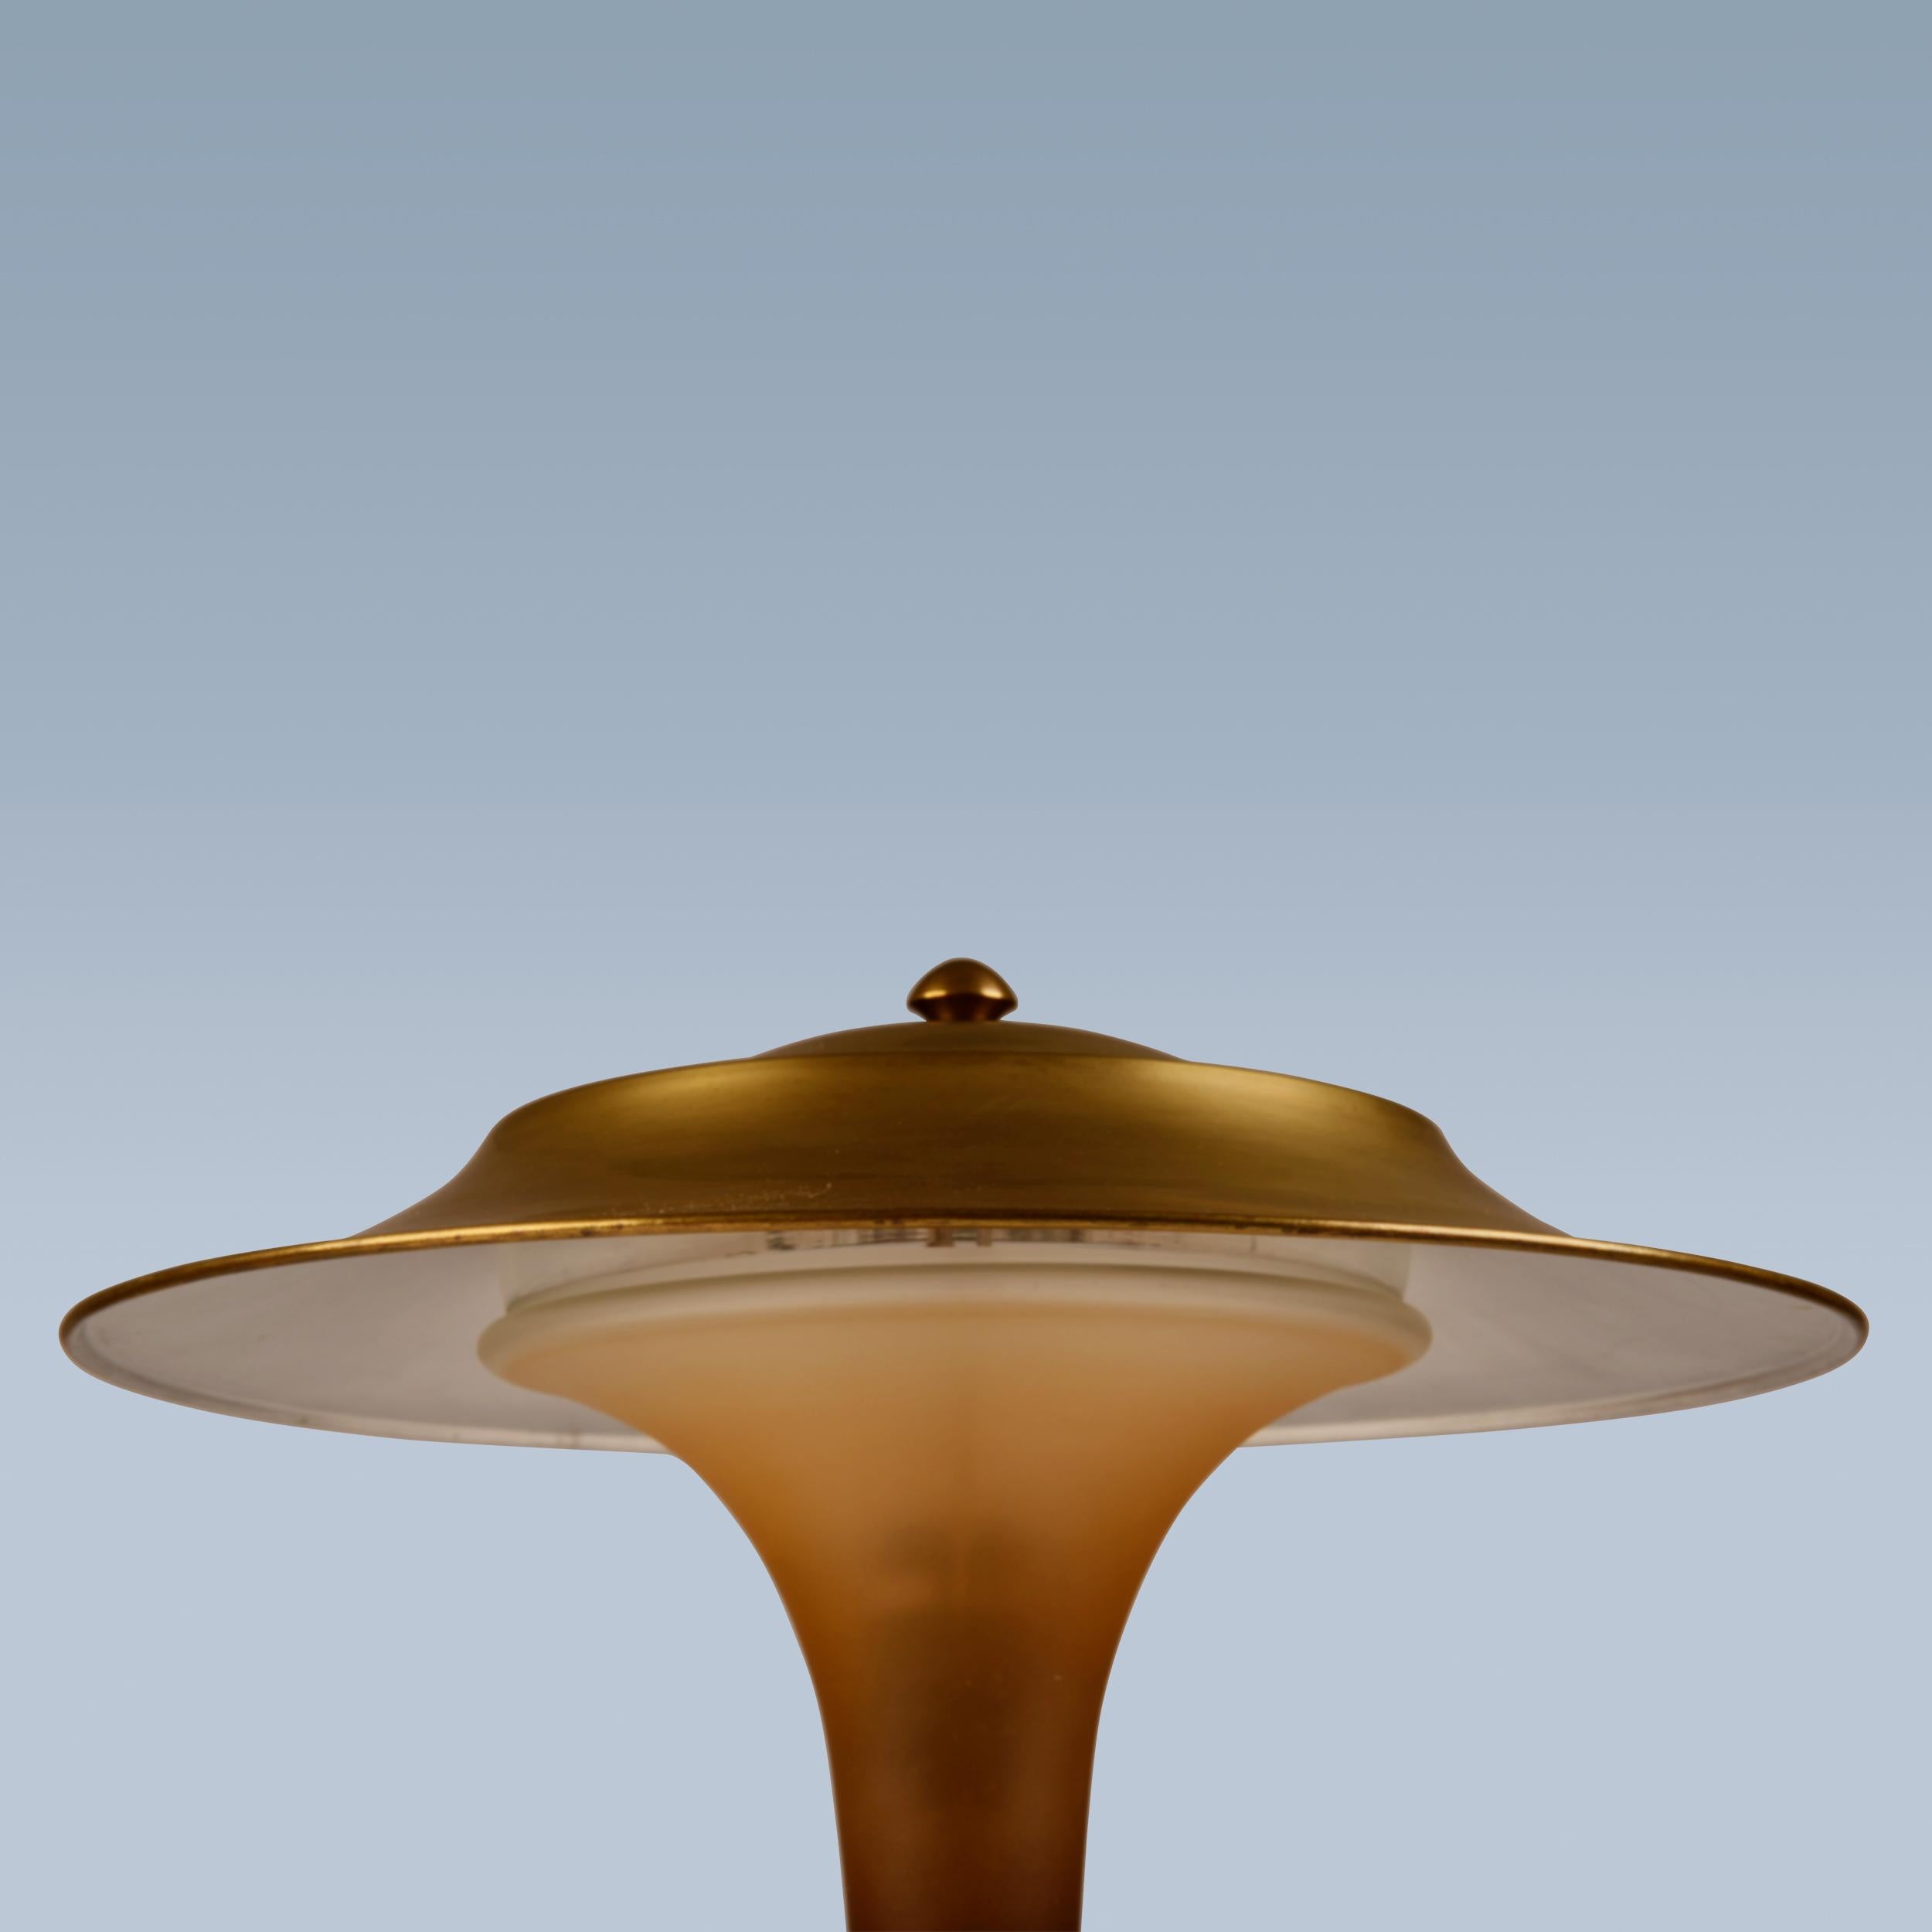 Cette lampe de table avec pied en laiton patiné, abat-jour et tige en verre ambré mat a été réalisée par Fog & Mørup vers les années 1930.
La lampe est appelée 